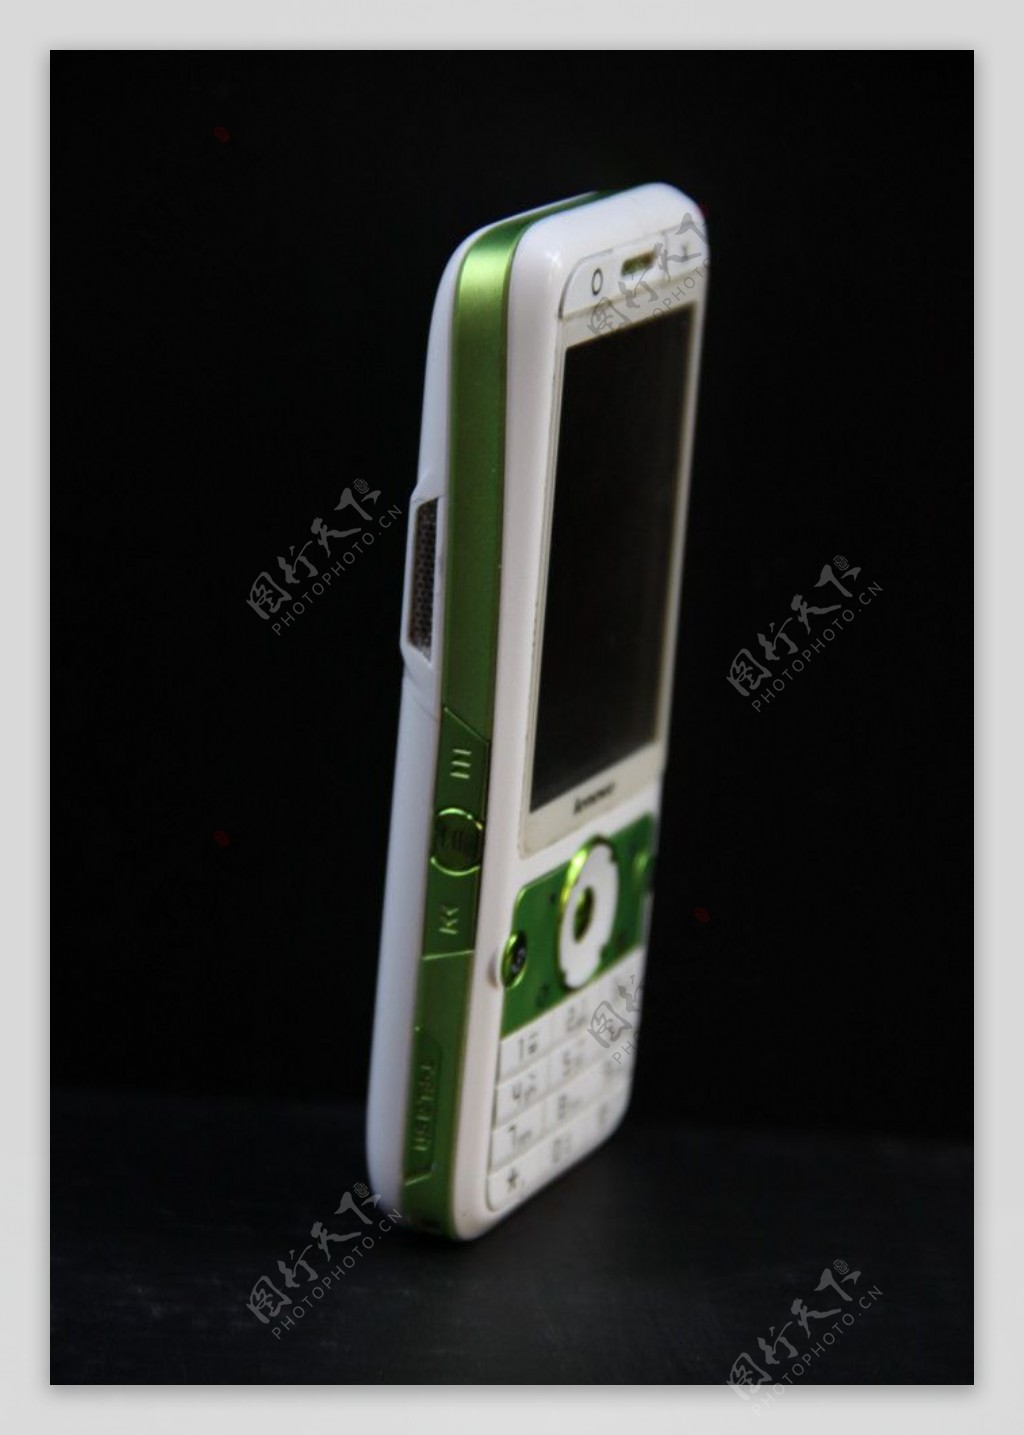 lenovo联想手机I909白绿色图片